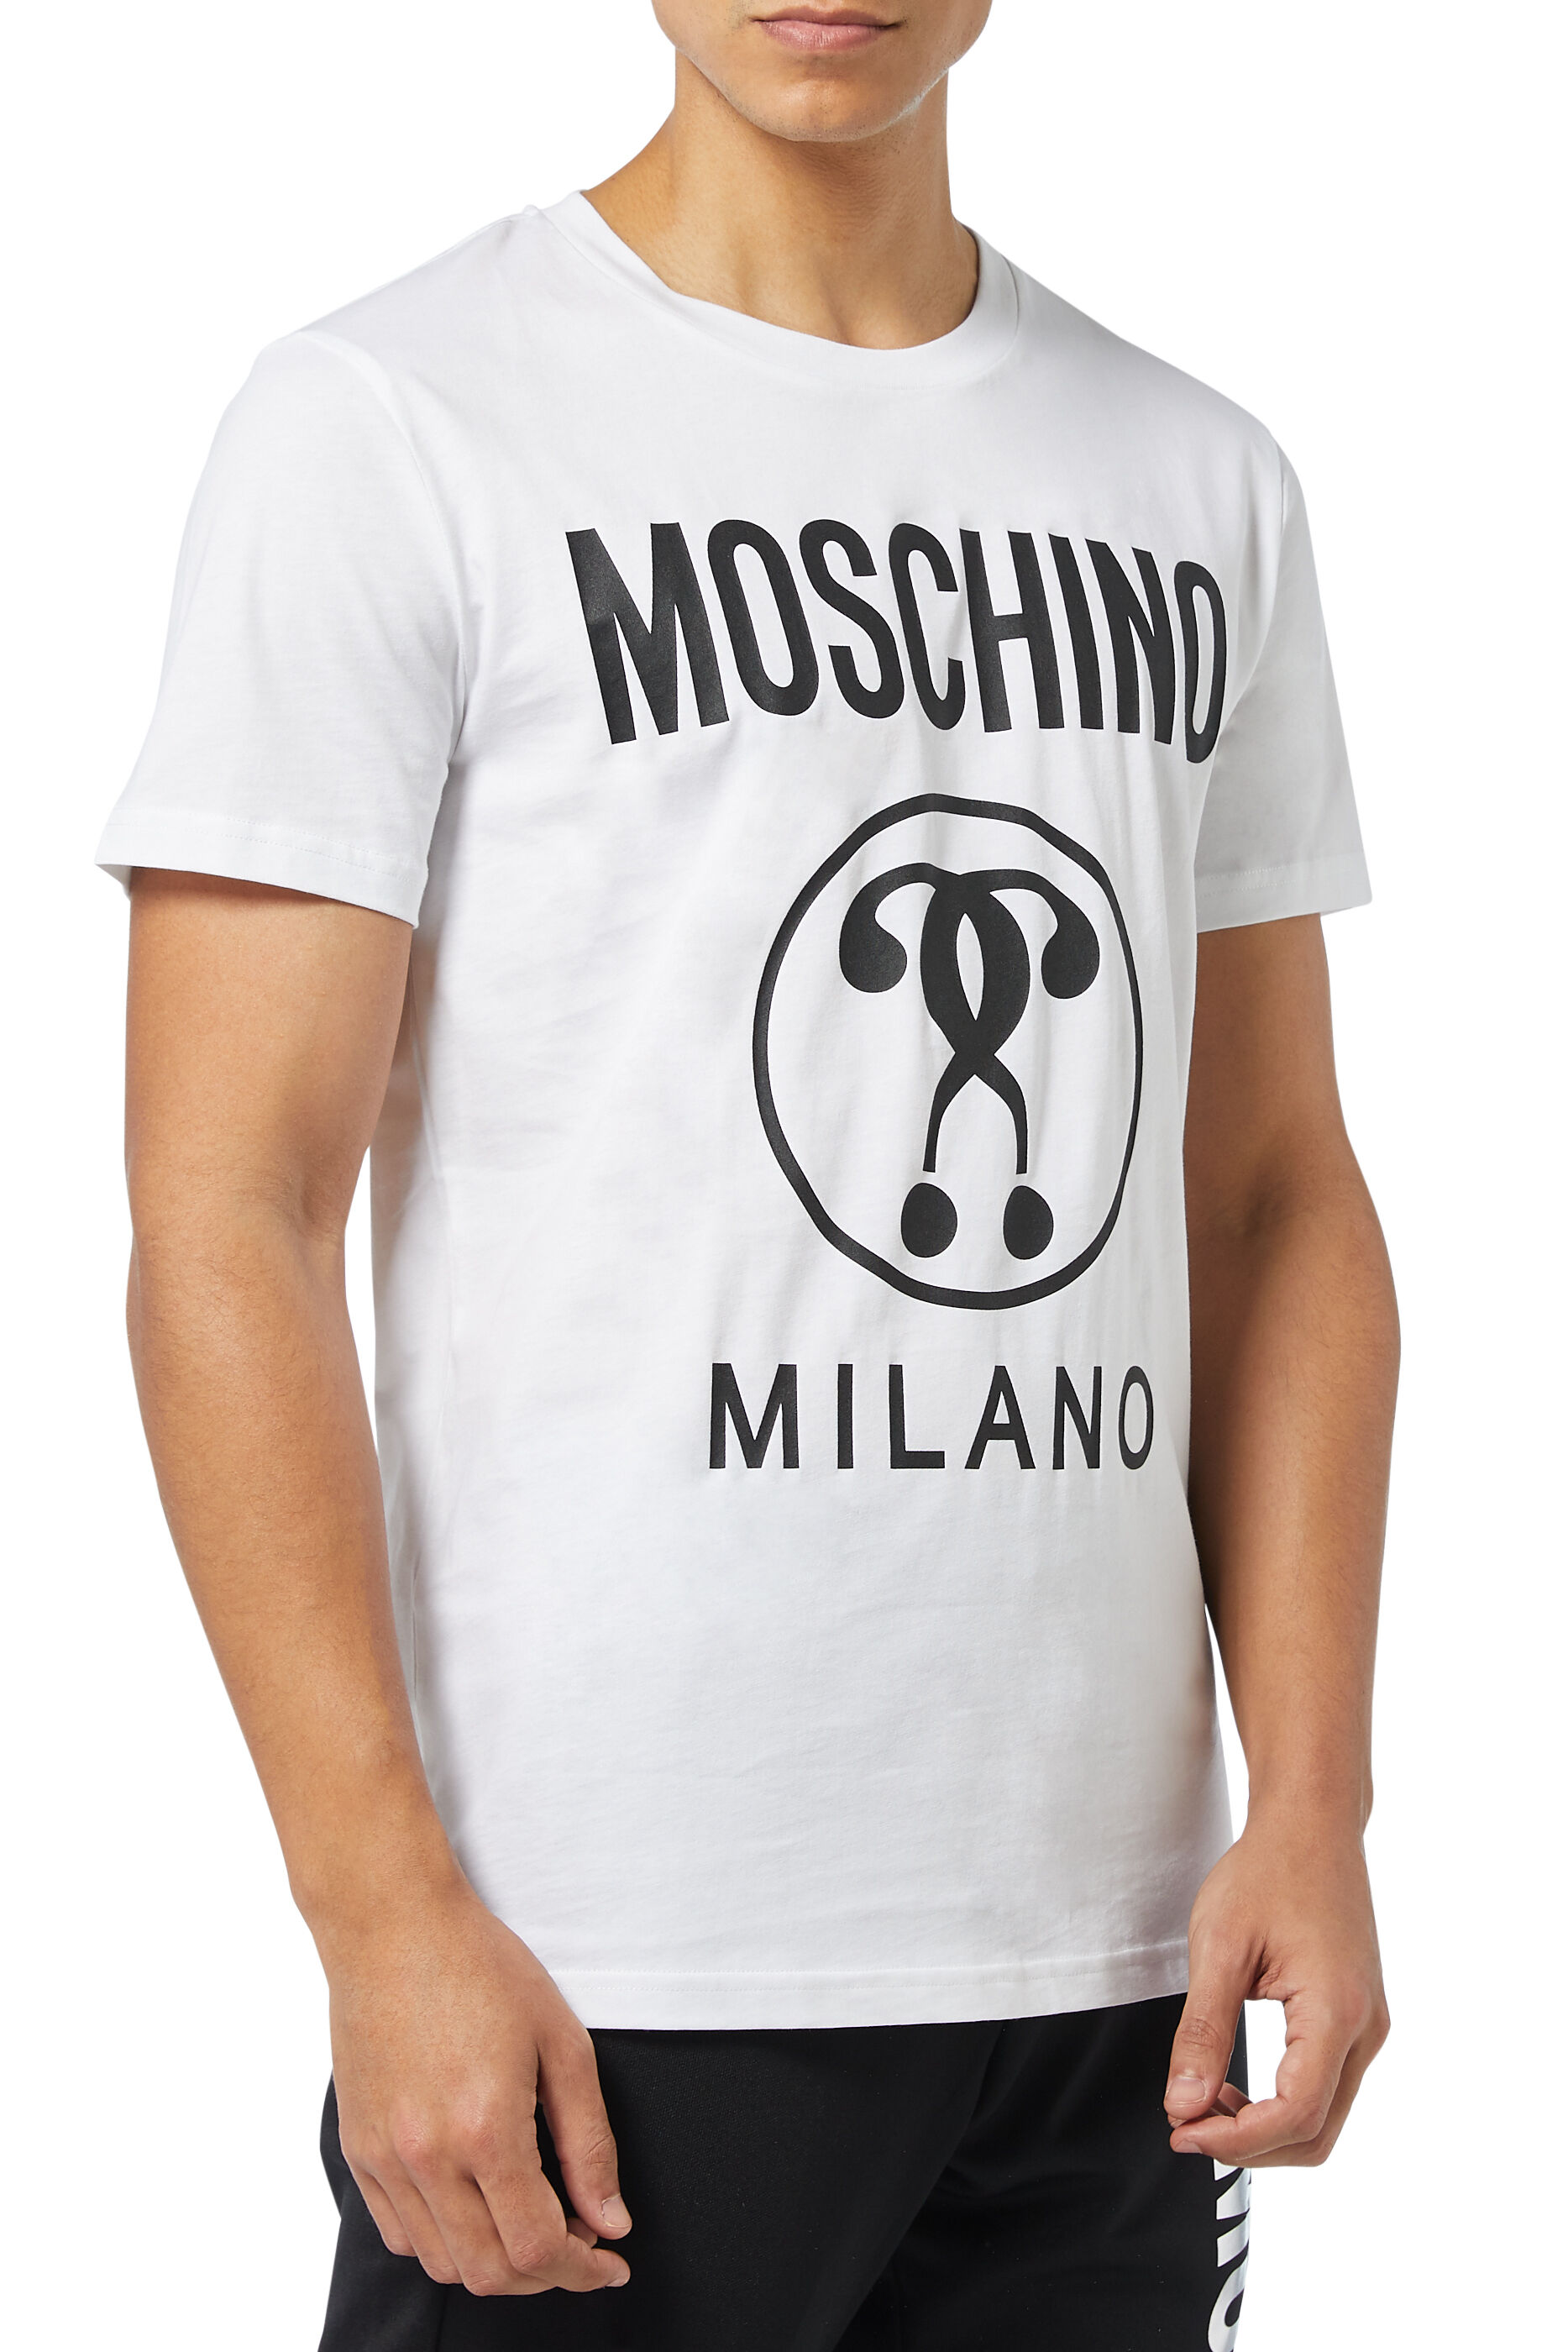 buy moschino t shirt